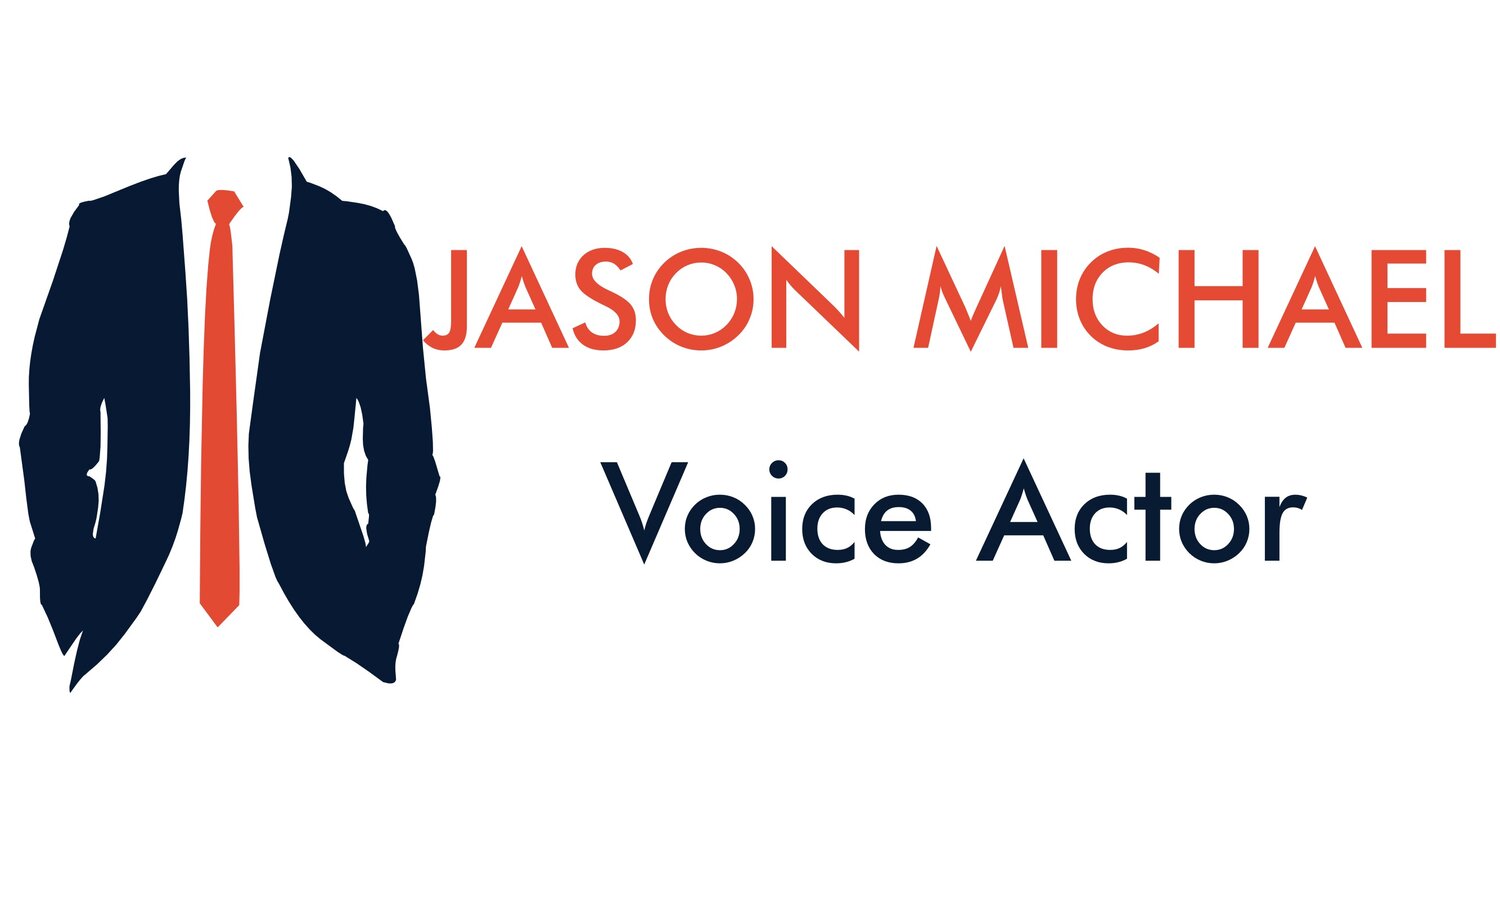 Jason Michael Friendly & Confident Voice Actor